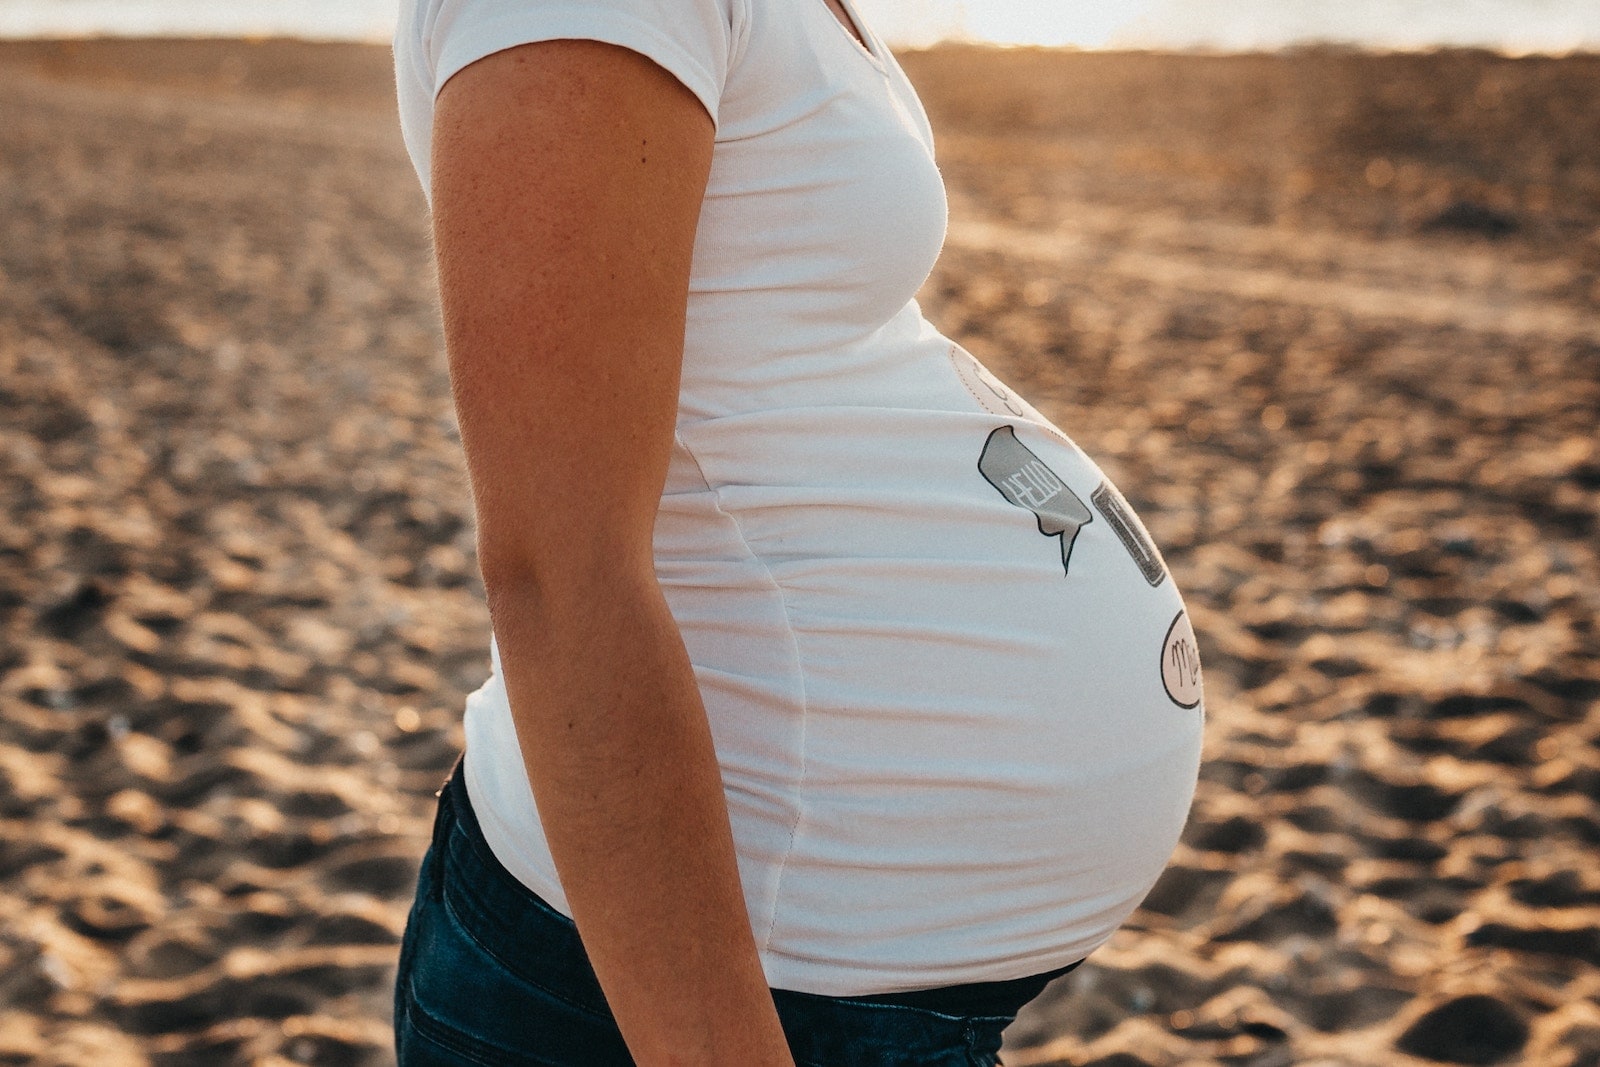 Pregnant woman at beach